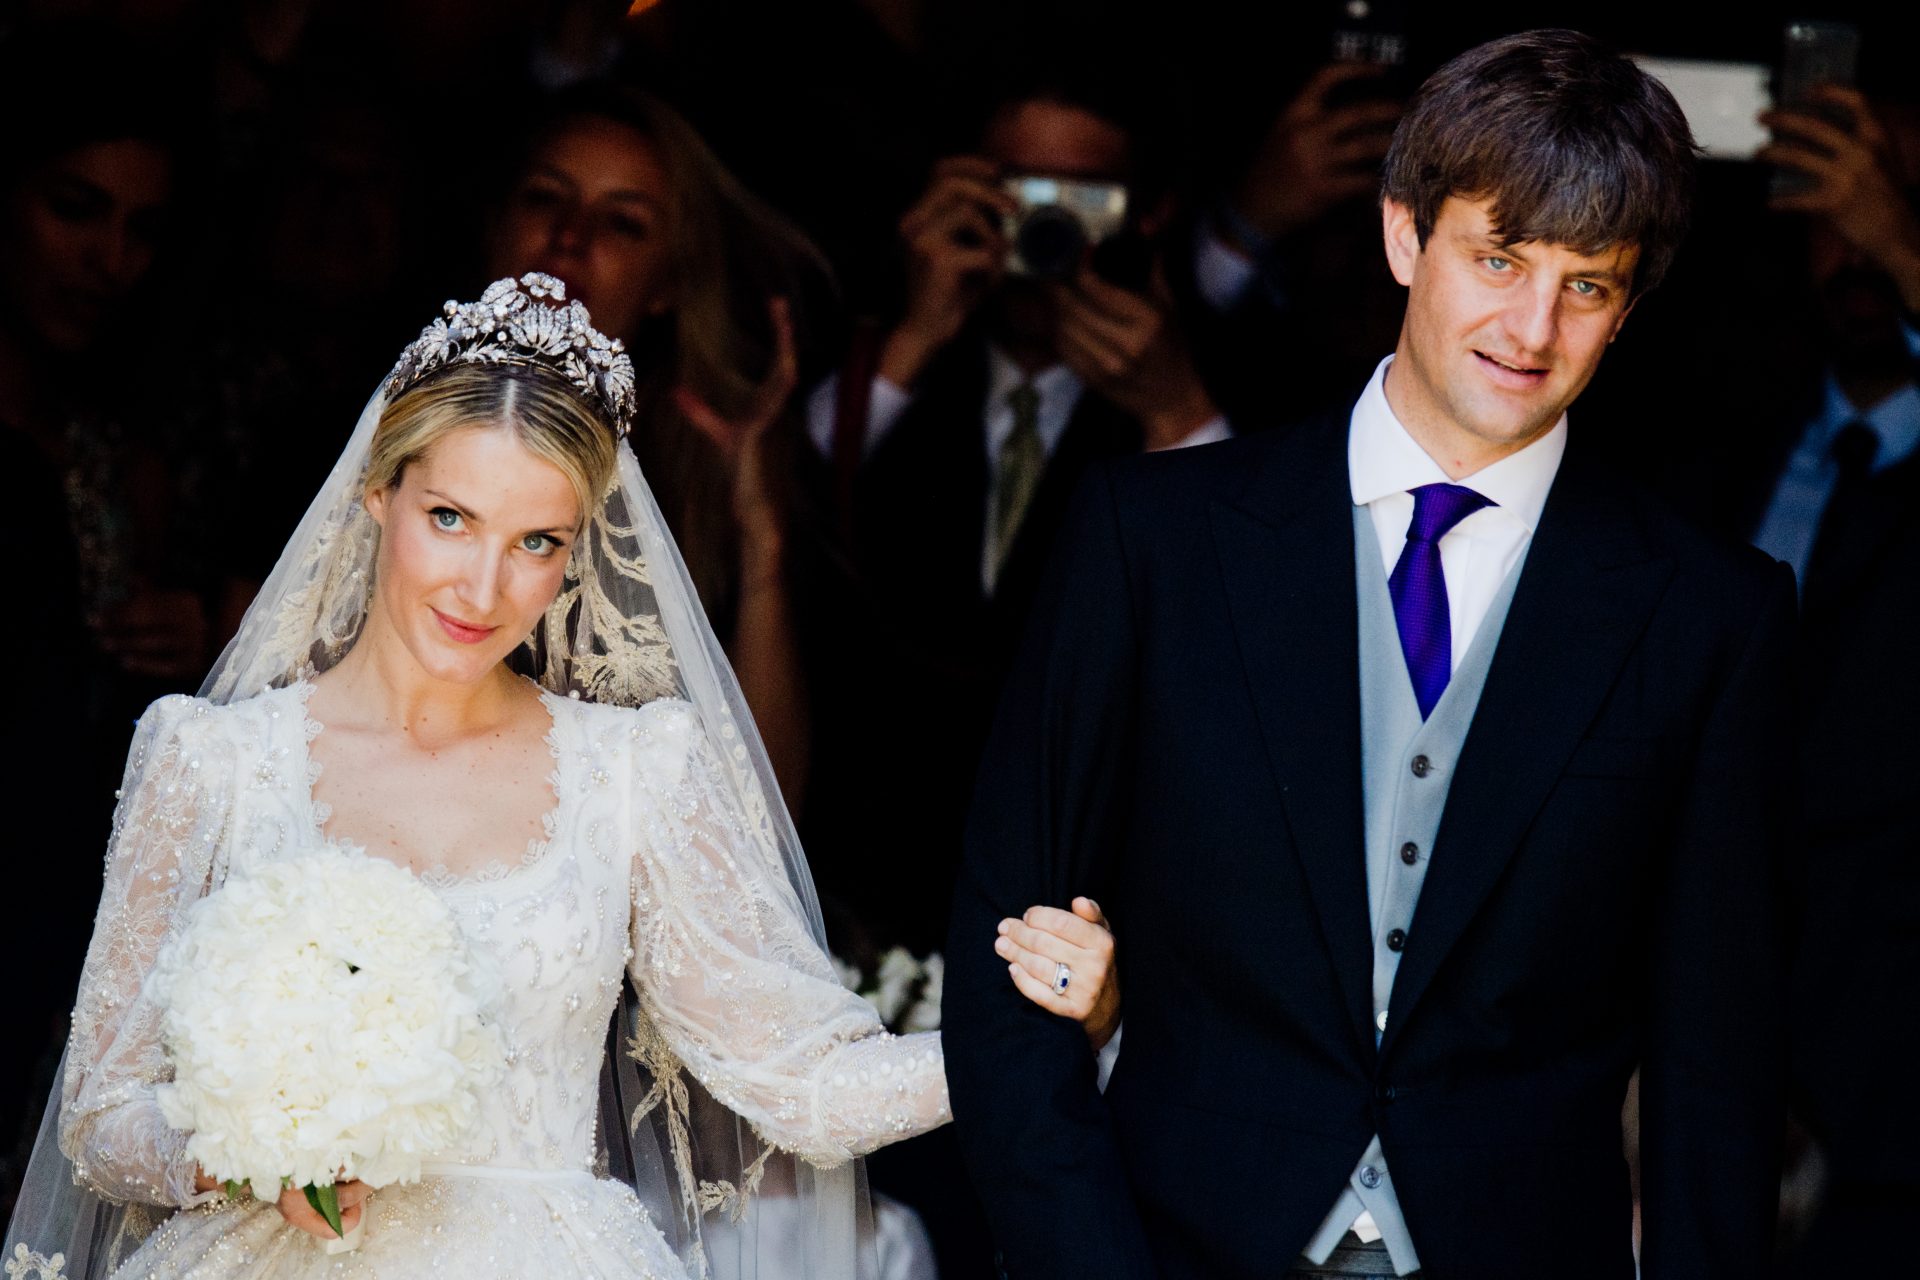 <p>Il padre e il figlio, che nel 2017 ha sposato la modella e imprenditrice russa Ekaterina Malysheva, sono impegnati in una feroce disputa su una proprietà emblematica della famiglia. In realtà, il principe non ha nemmeno partecipato alla cerimonia di nozze del figlio.</p>